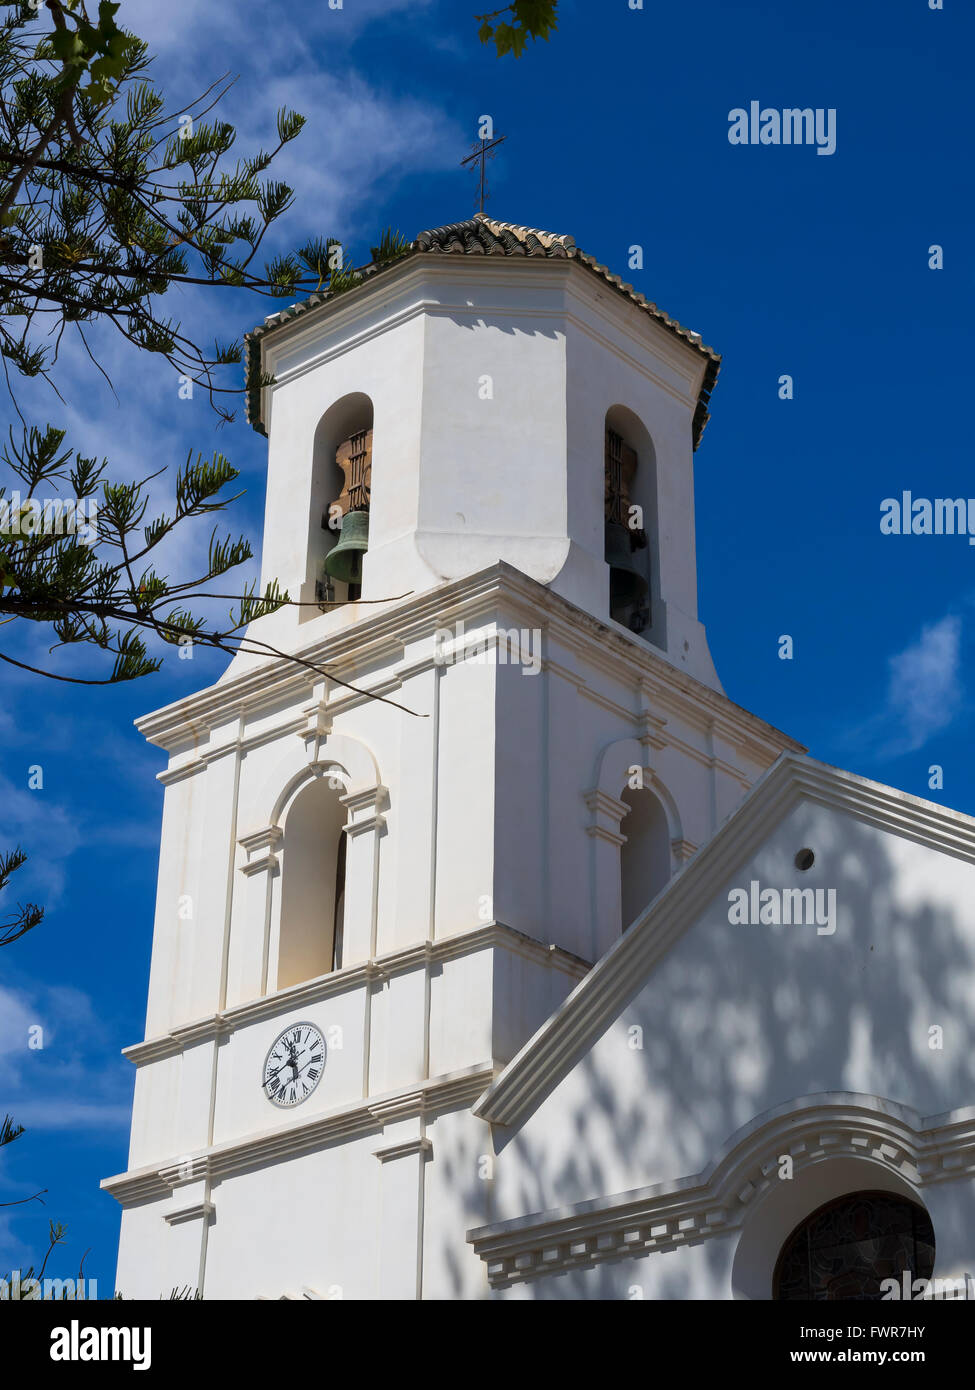 Belfry of the church El Salvador, Nerja, Málaga province, Costa del Sol, Andalucía, Spain Stock Photo